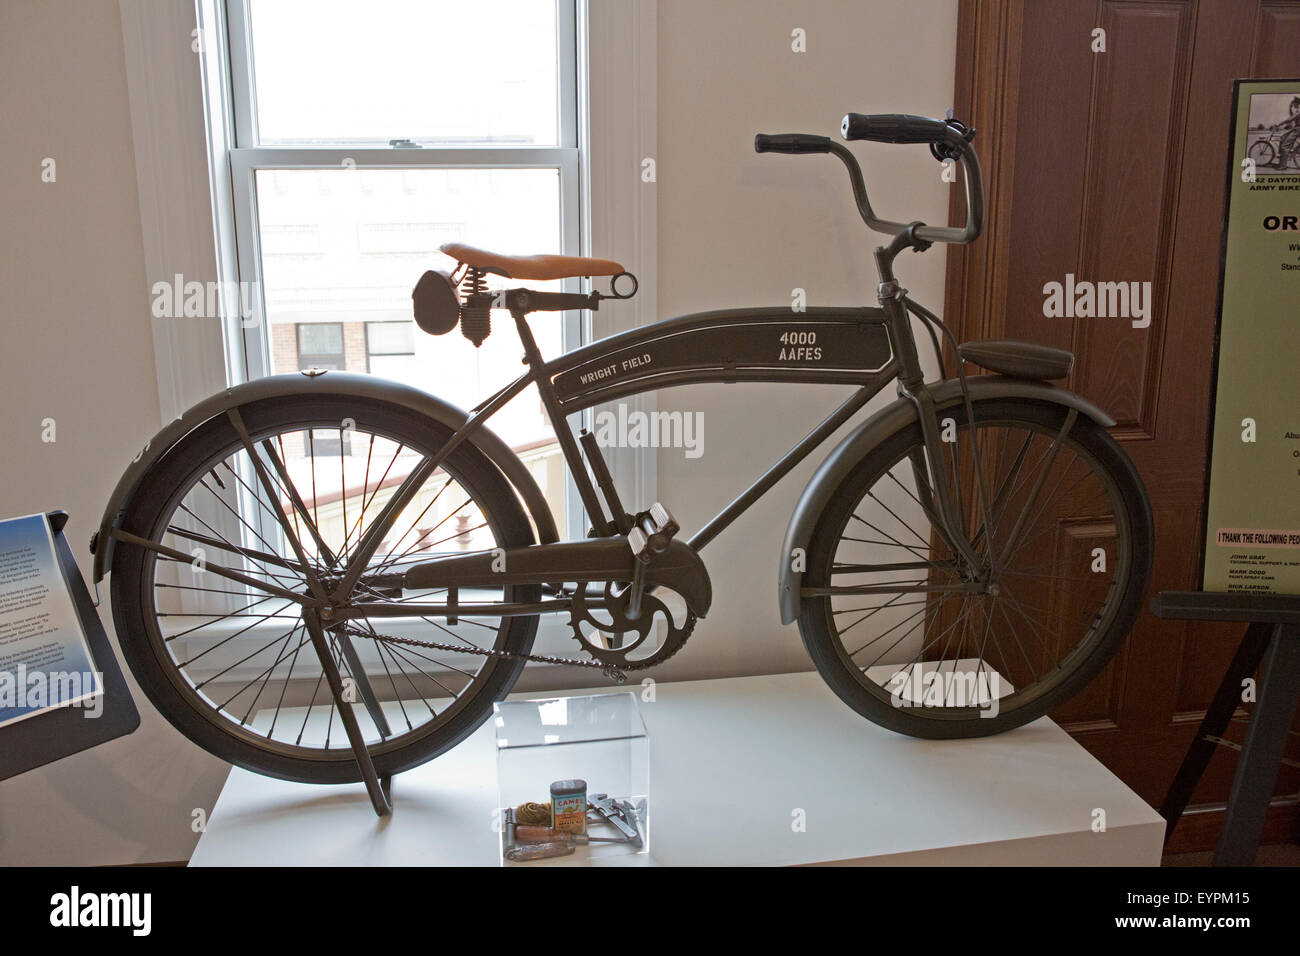 L'armée américaine location exposée au Musée de la bicyclette d'Amérique Banque D'Images